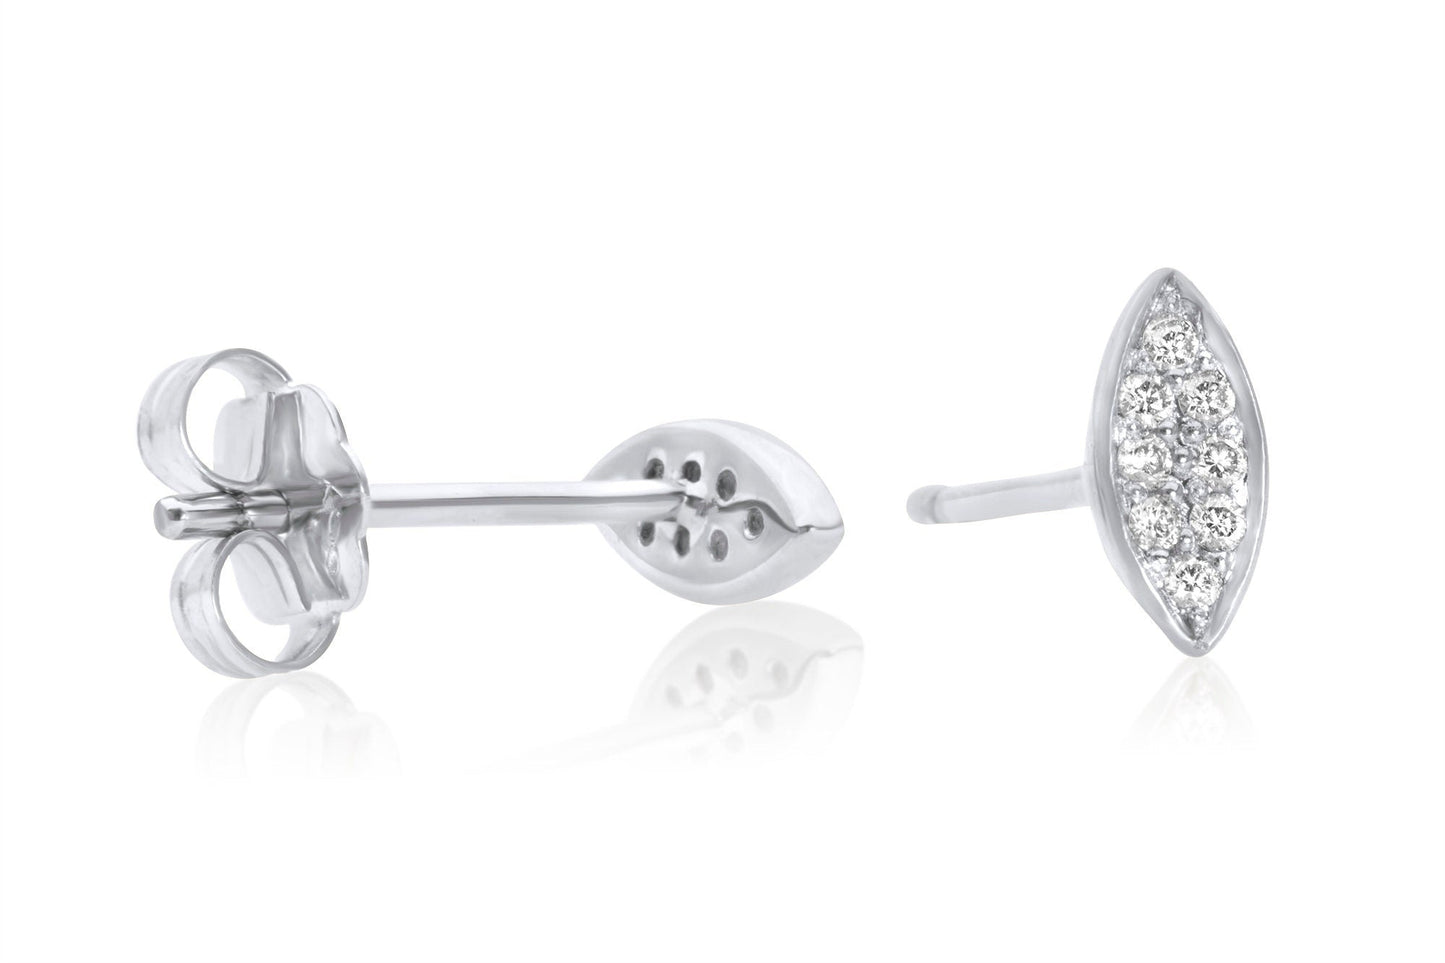 14k Pave Set Diamond Stud Earrings